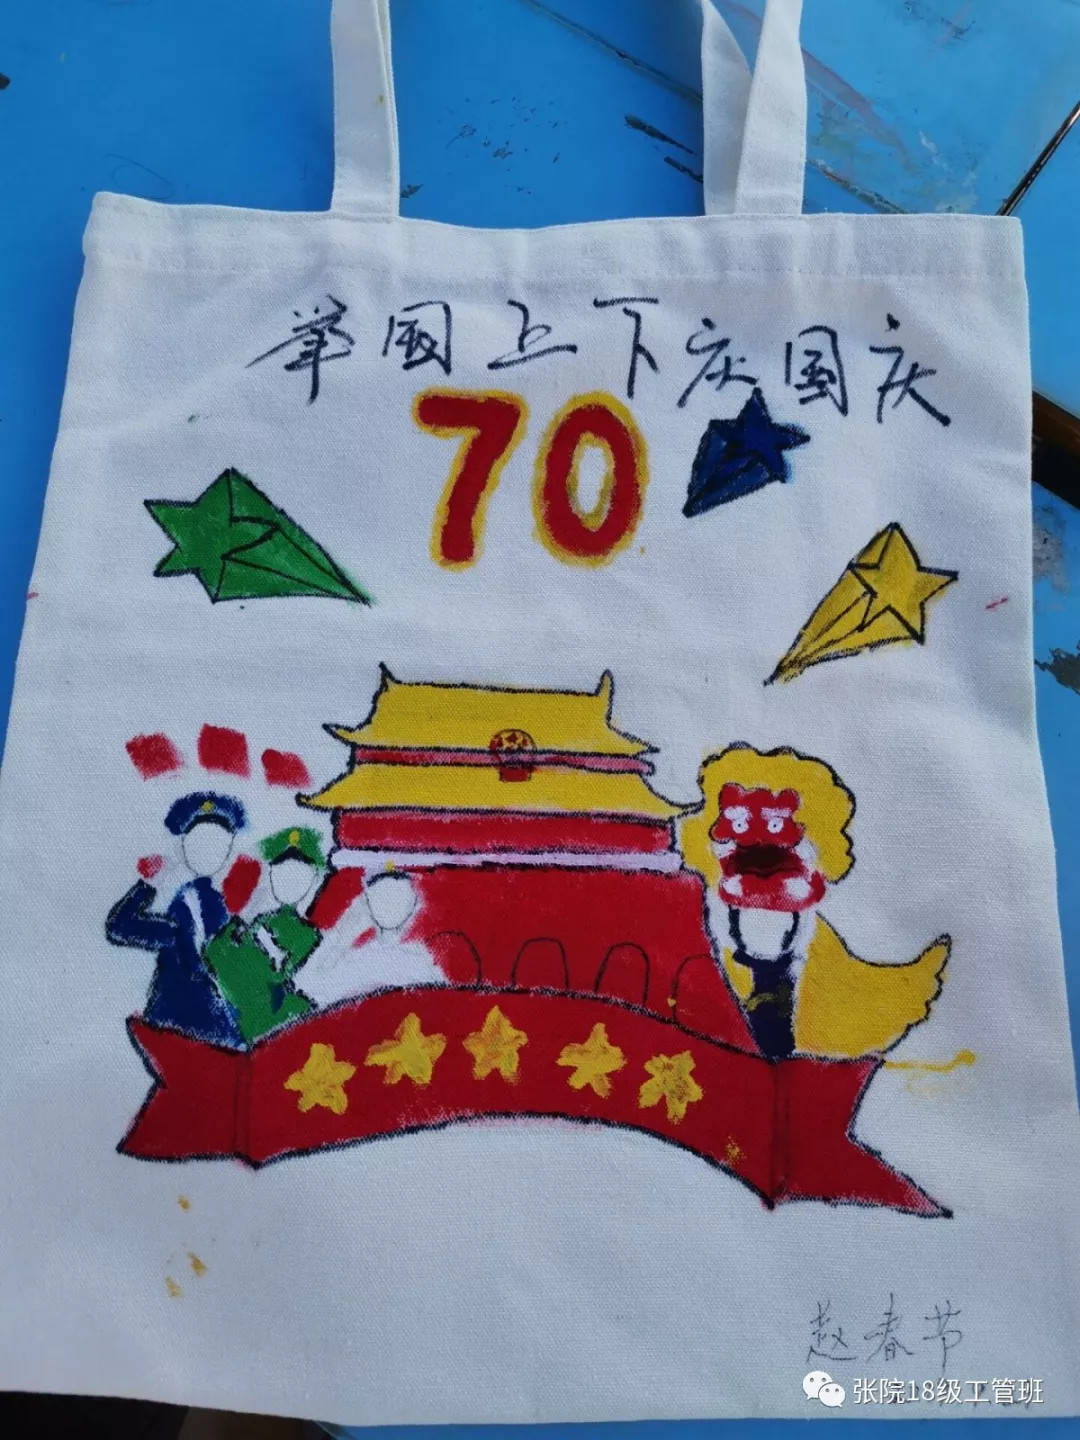 中华人民共和国成立70周年帆布袋手绘帆布袋展示(图1)